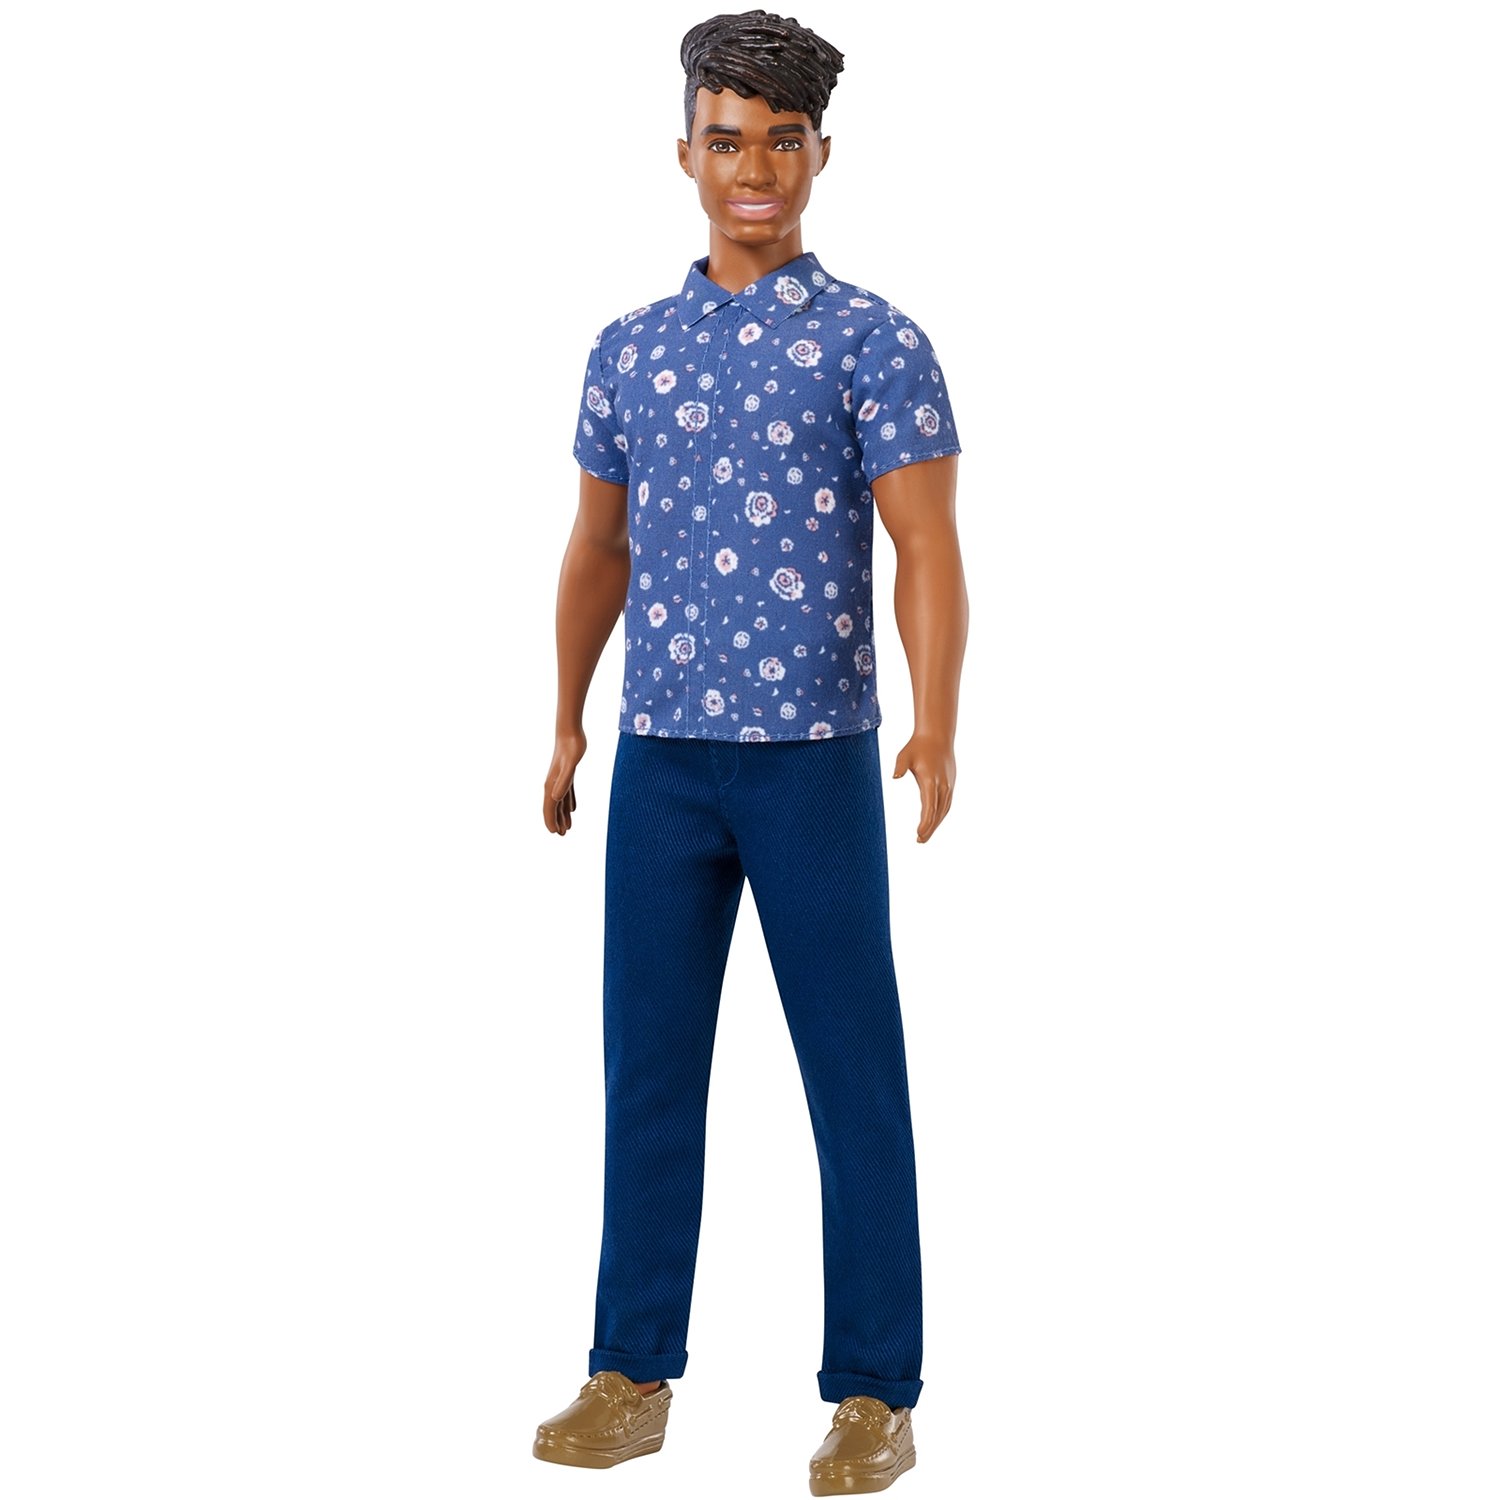 Кукла Barbie Игра с модой Кен, 30.5 см, FXL61